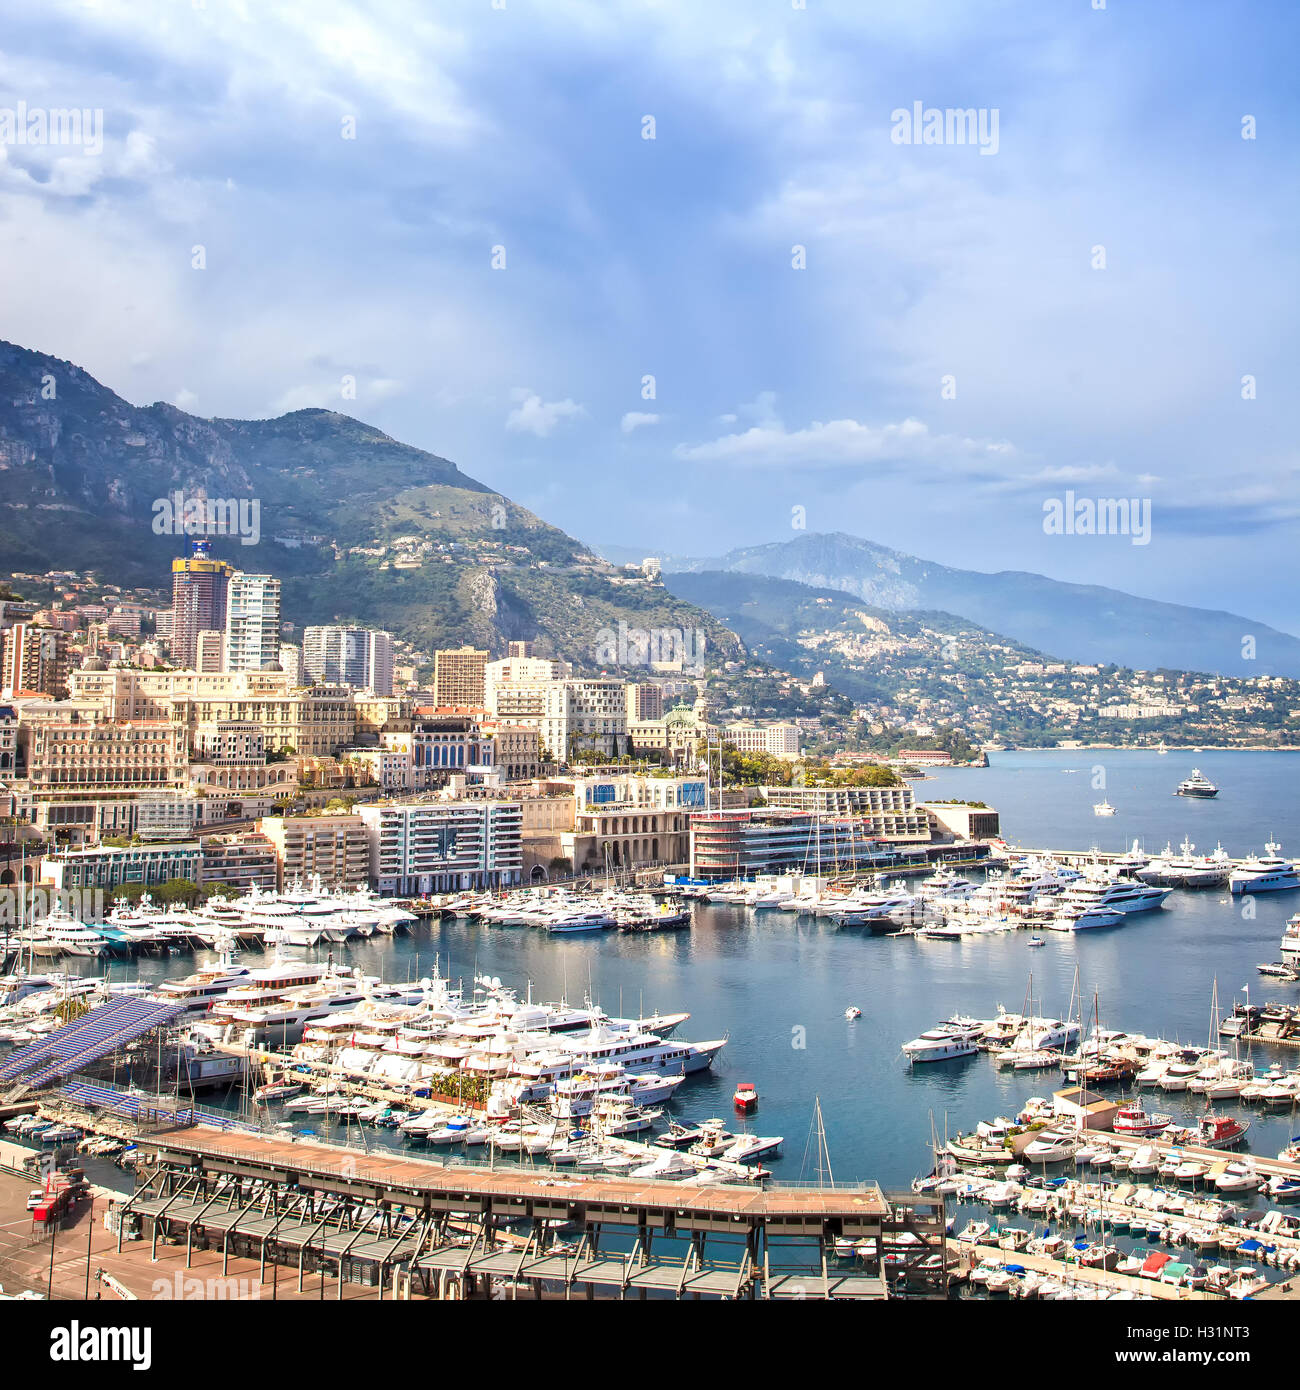 Principauté de Monaco Montecarlo cityscape, vue sur le port de l'antenne. Gratte-ciel, les montagnes et le port de plaisance. Côte d'Azur. La France, l'Europe. Banque D'Images